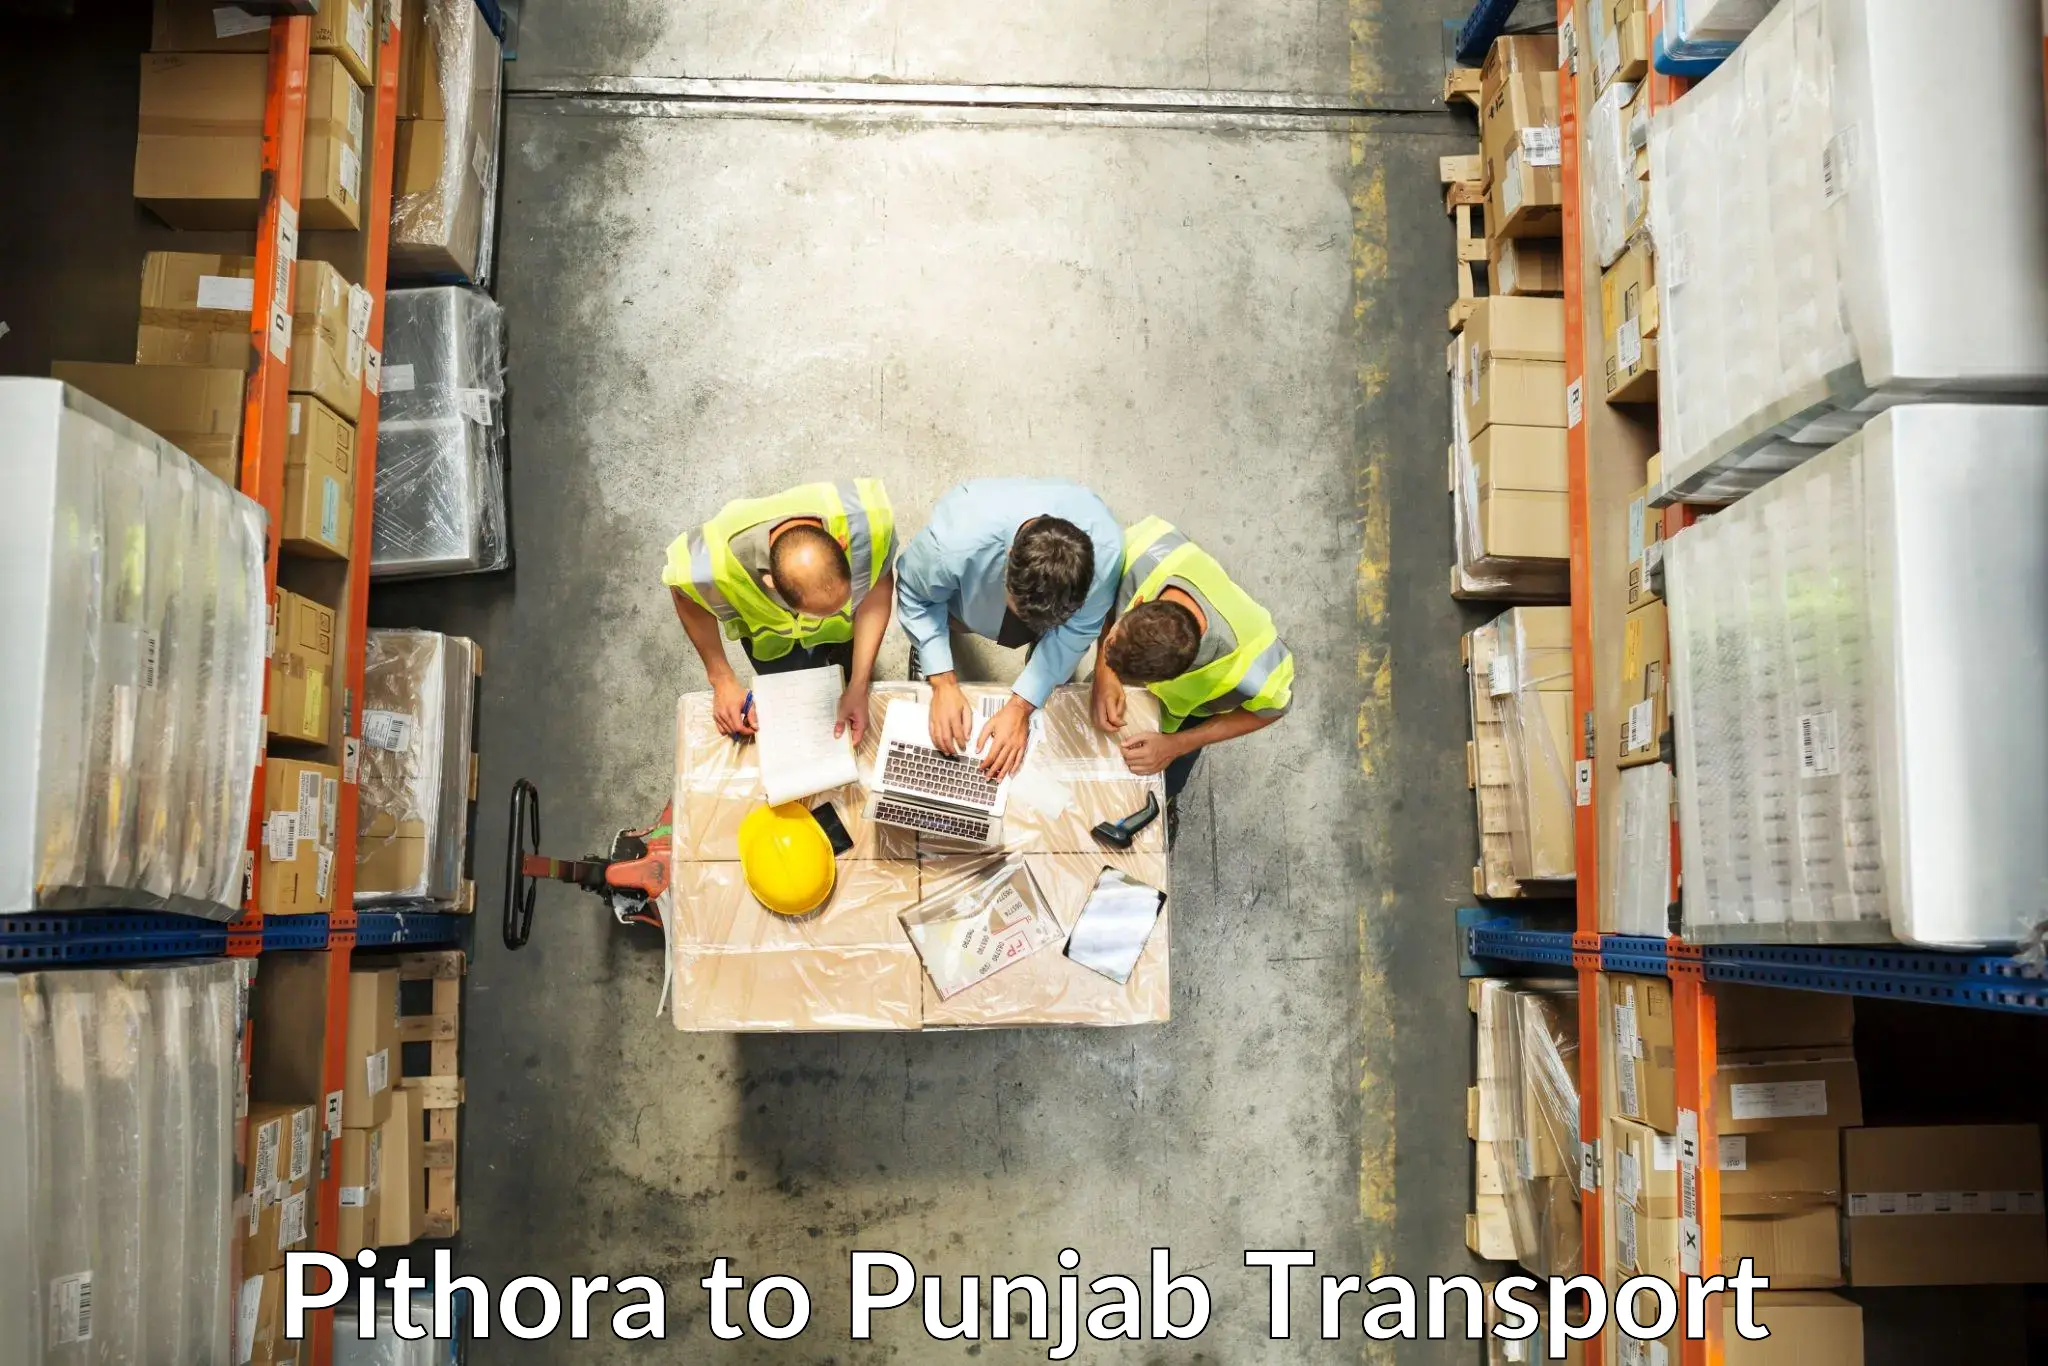 Nationwide transport services Pithora to Punjab